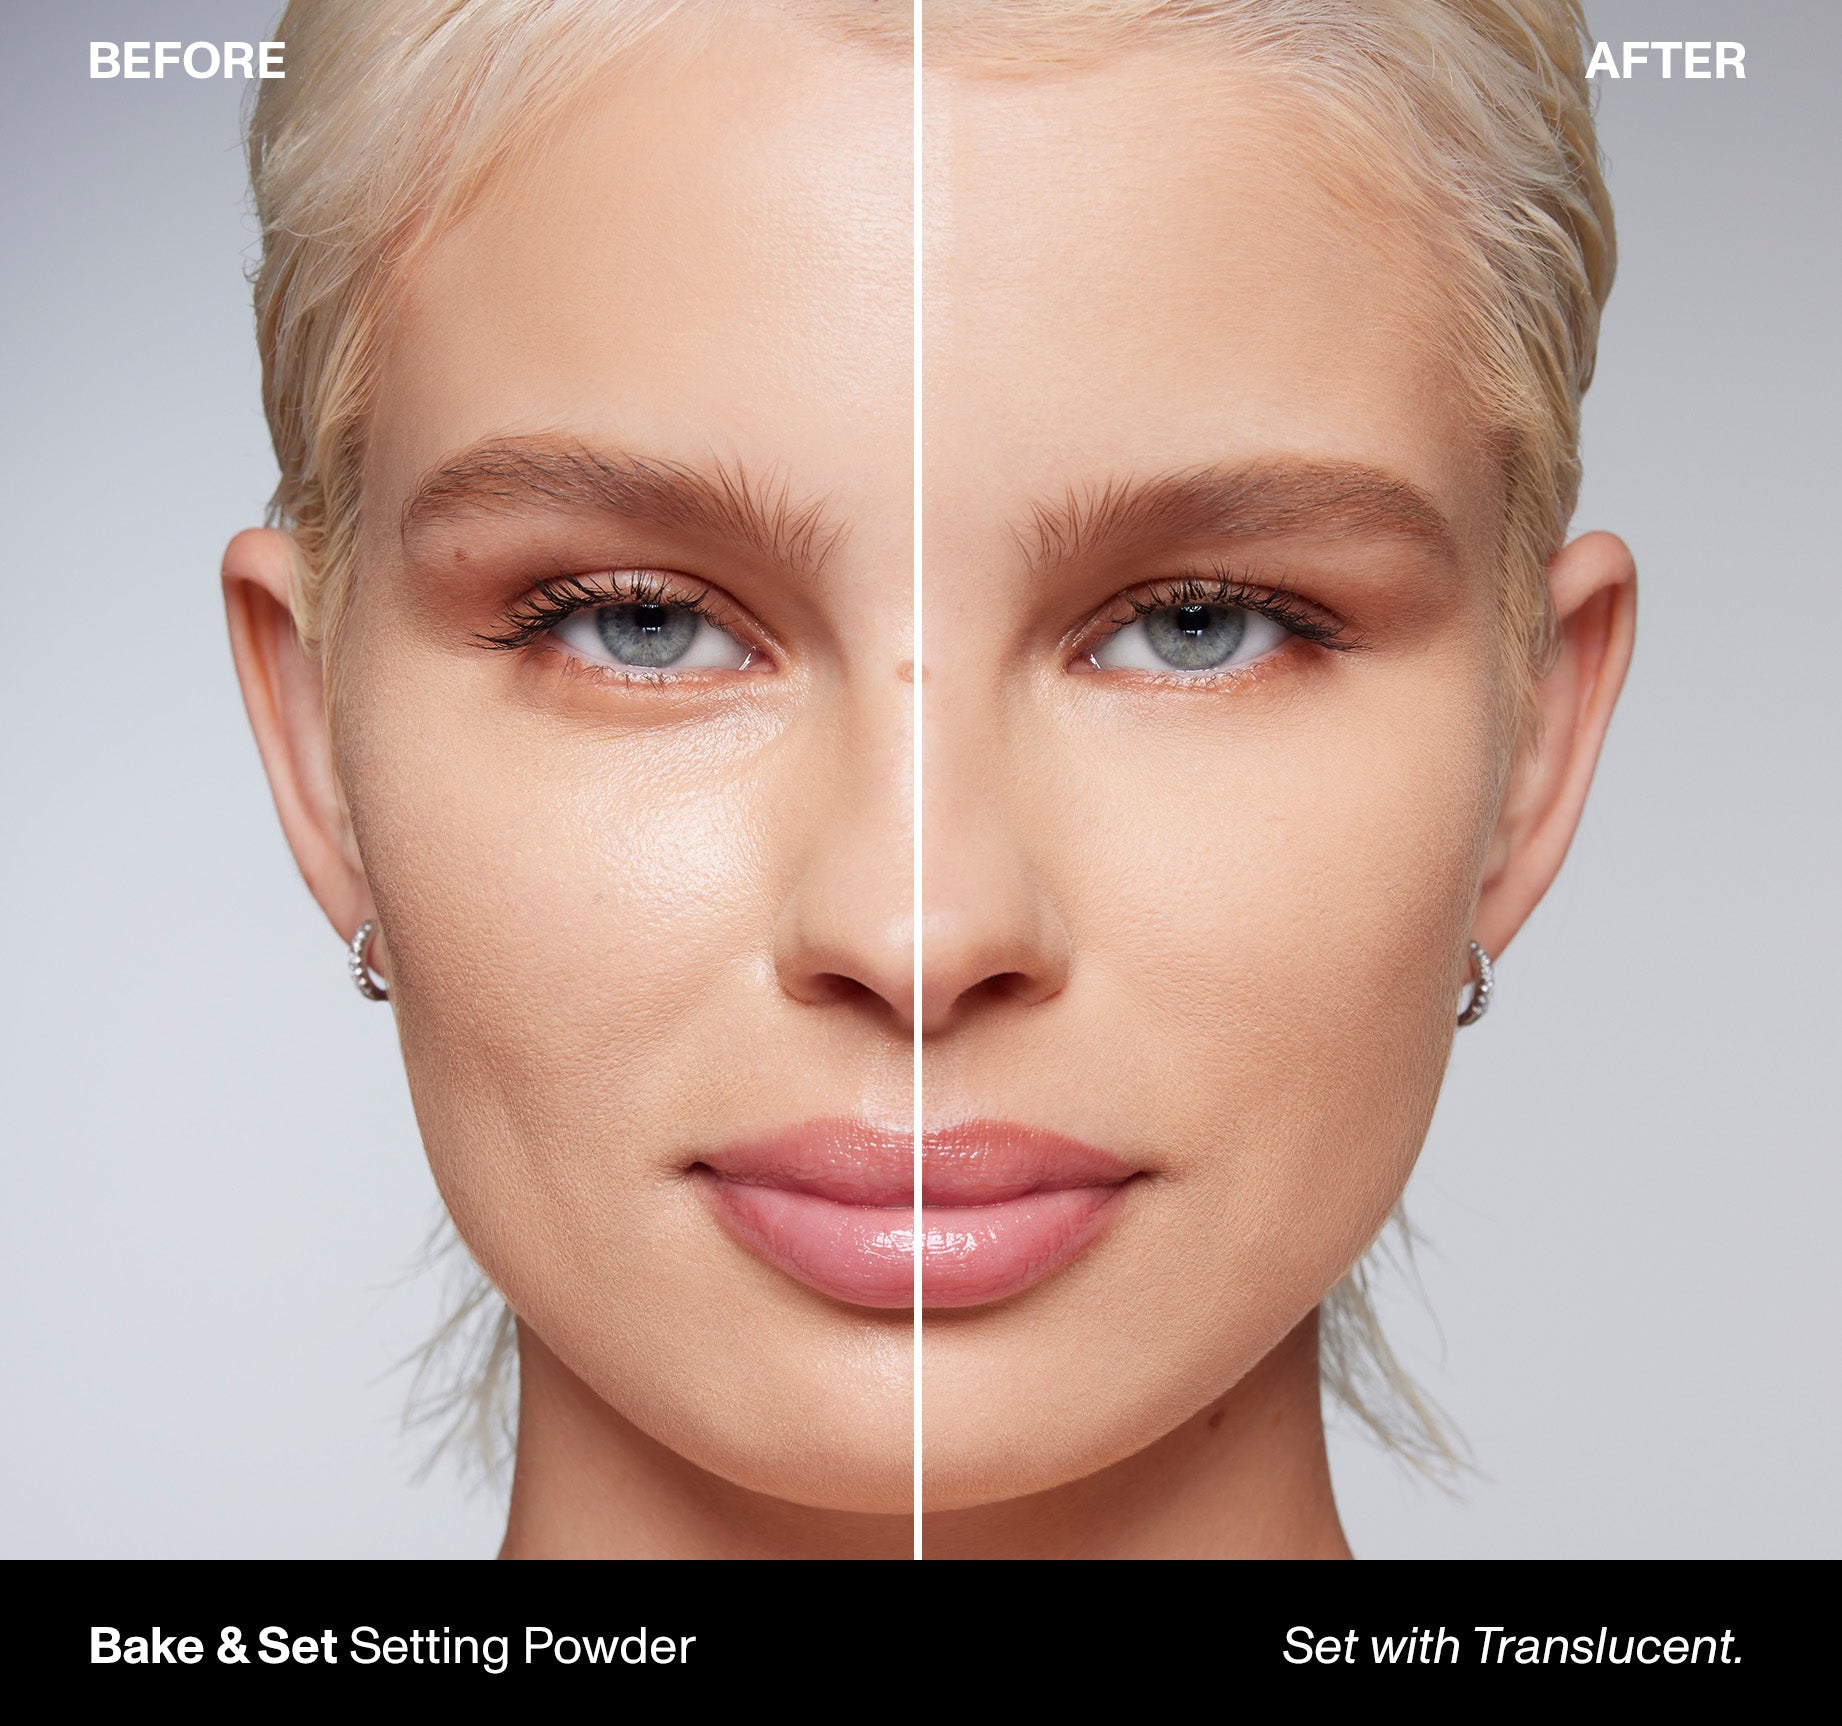 Bake & Set Soft Focus Setting Powder - Translucent - Image 3